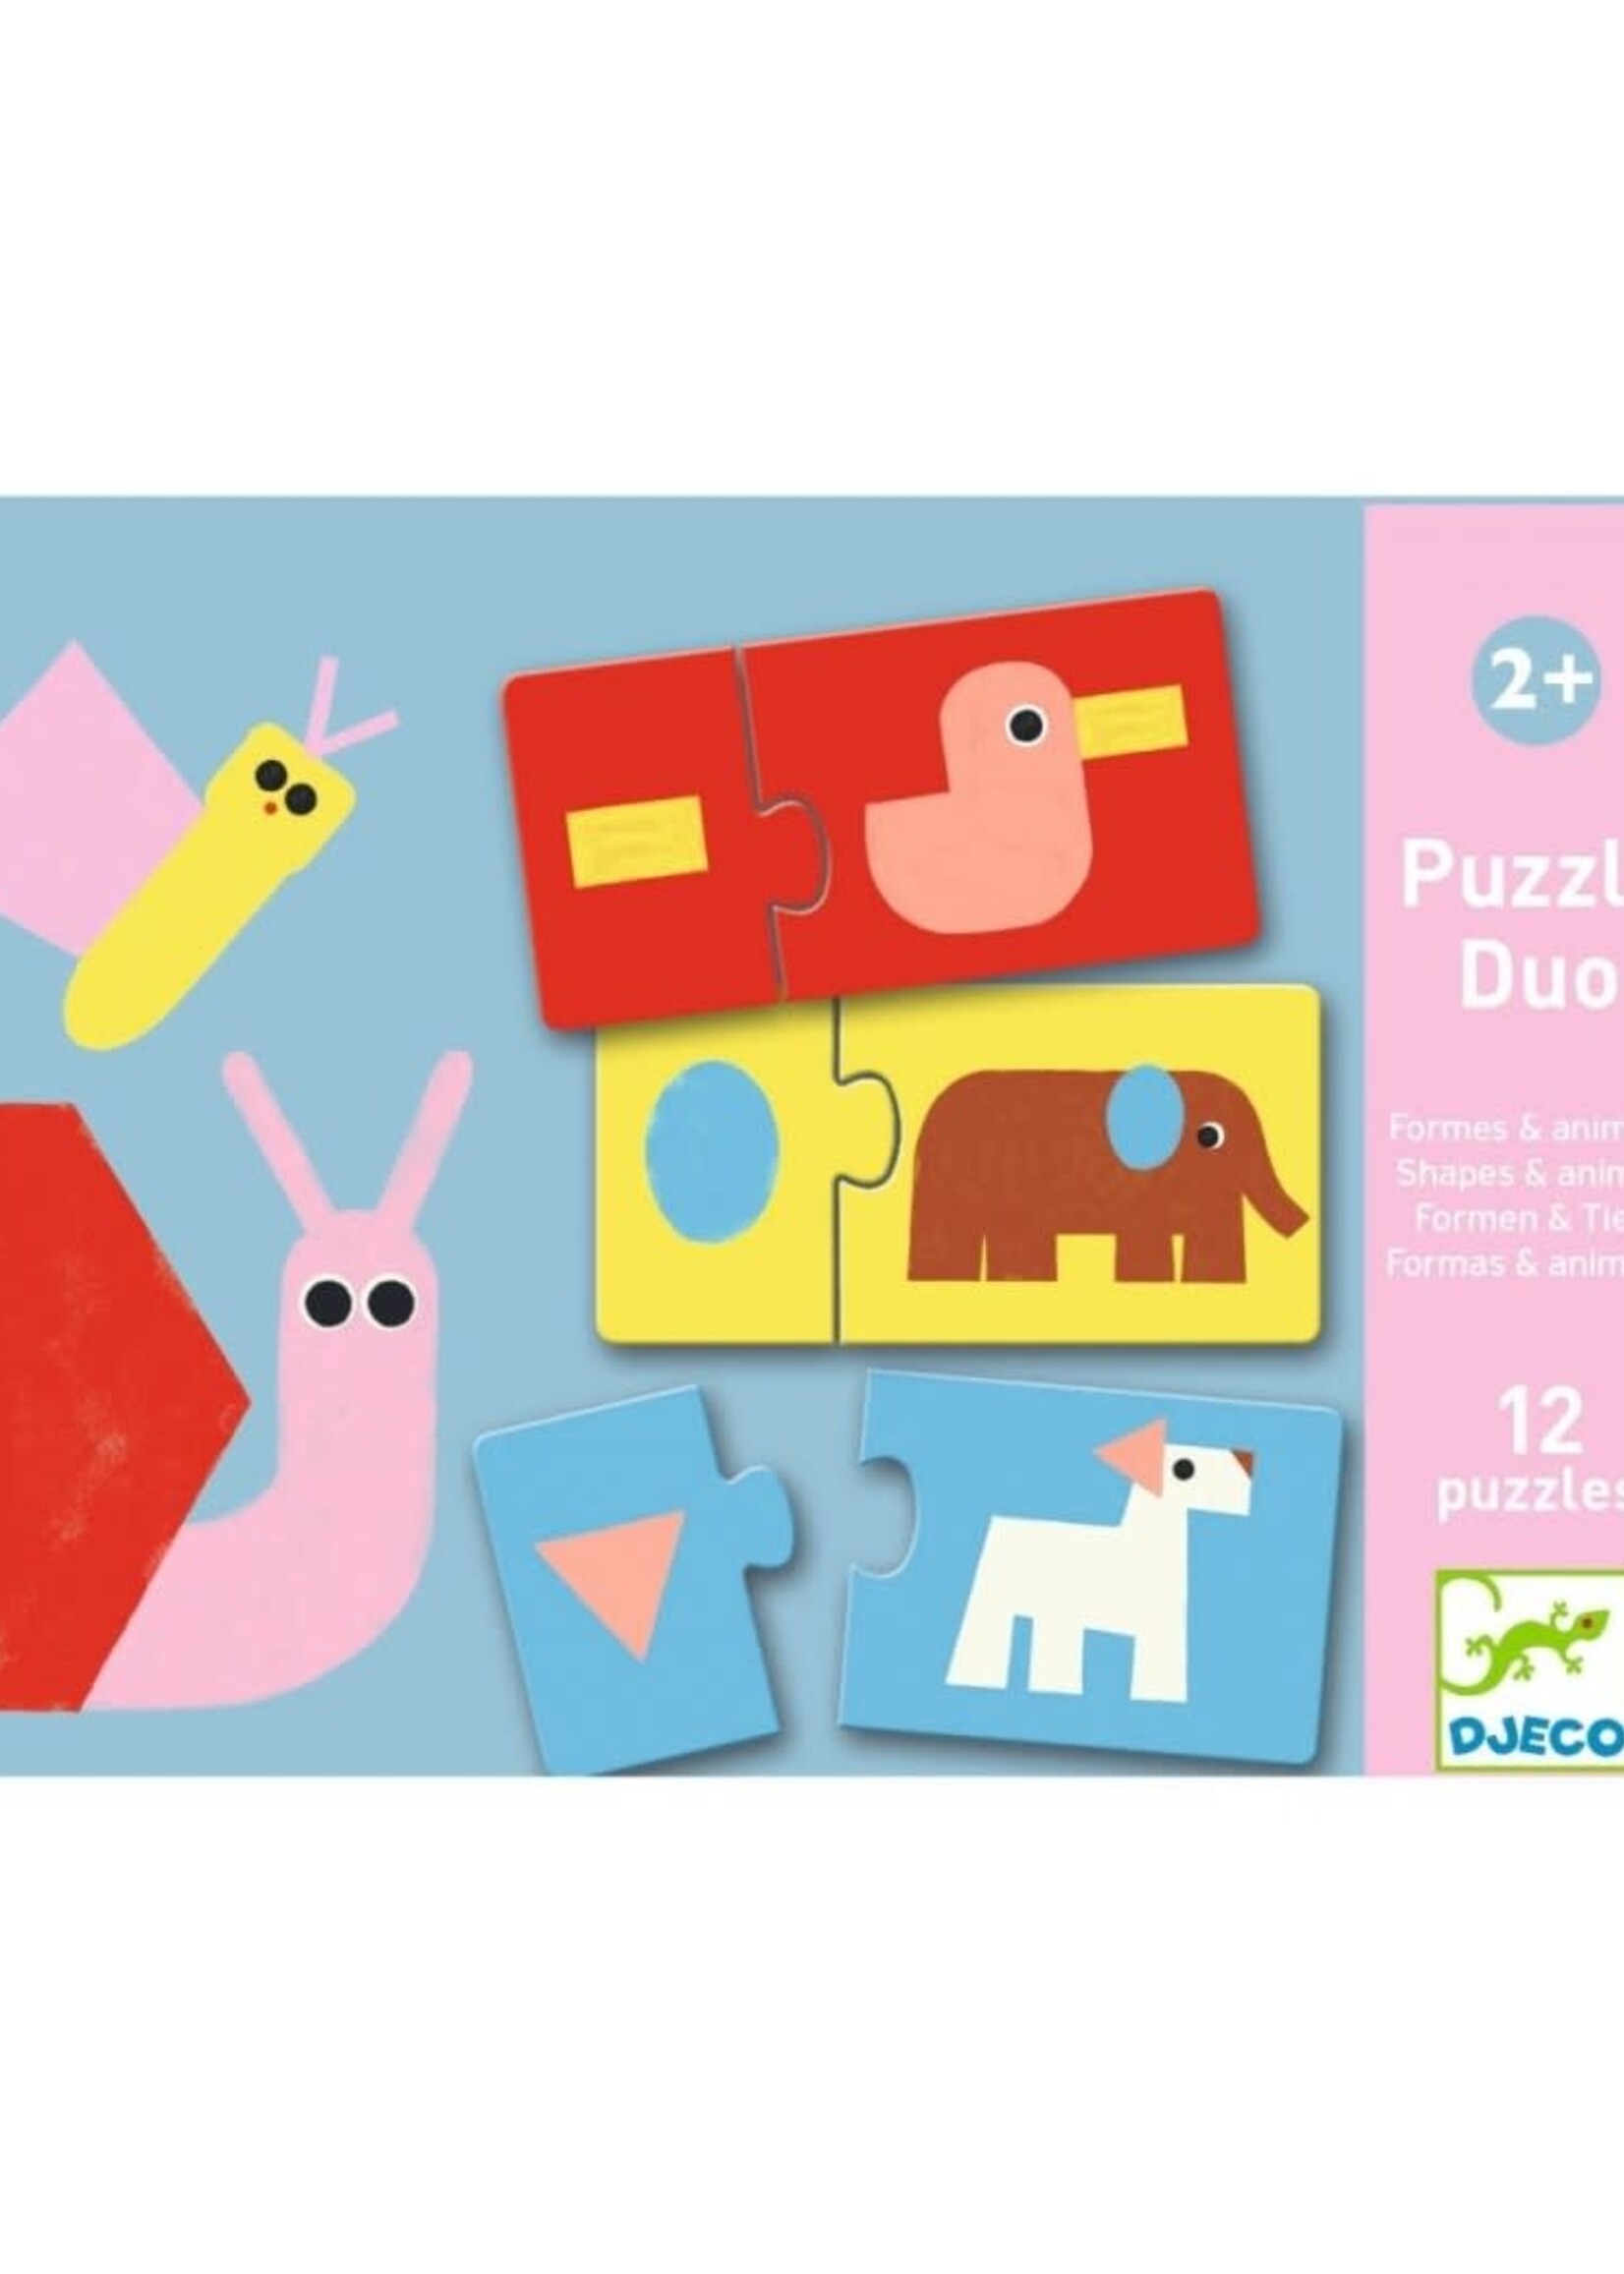 Djeco Djeco Puzzle Duo dieren en vormen